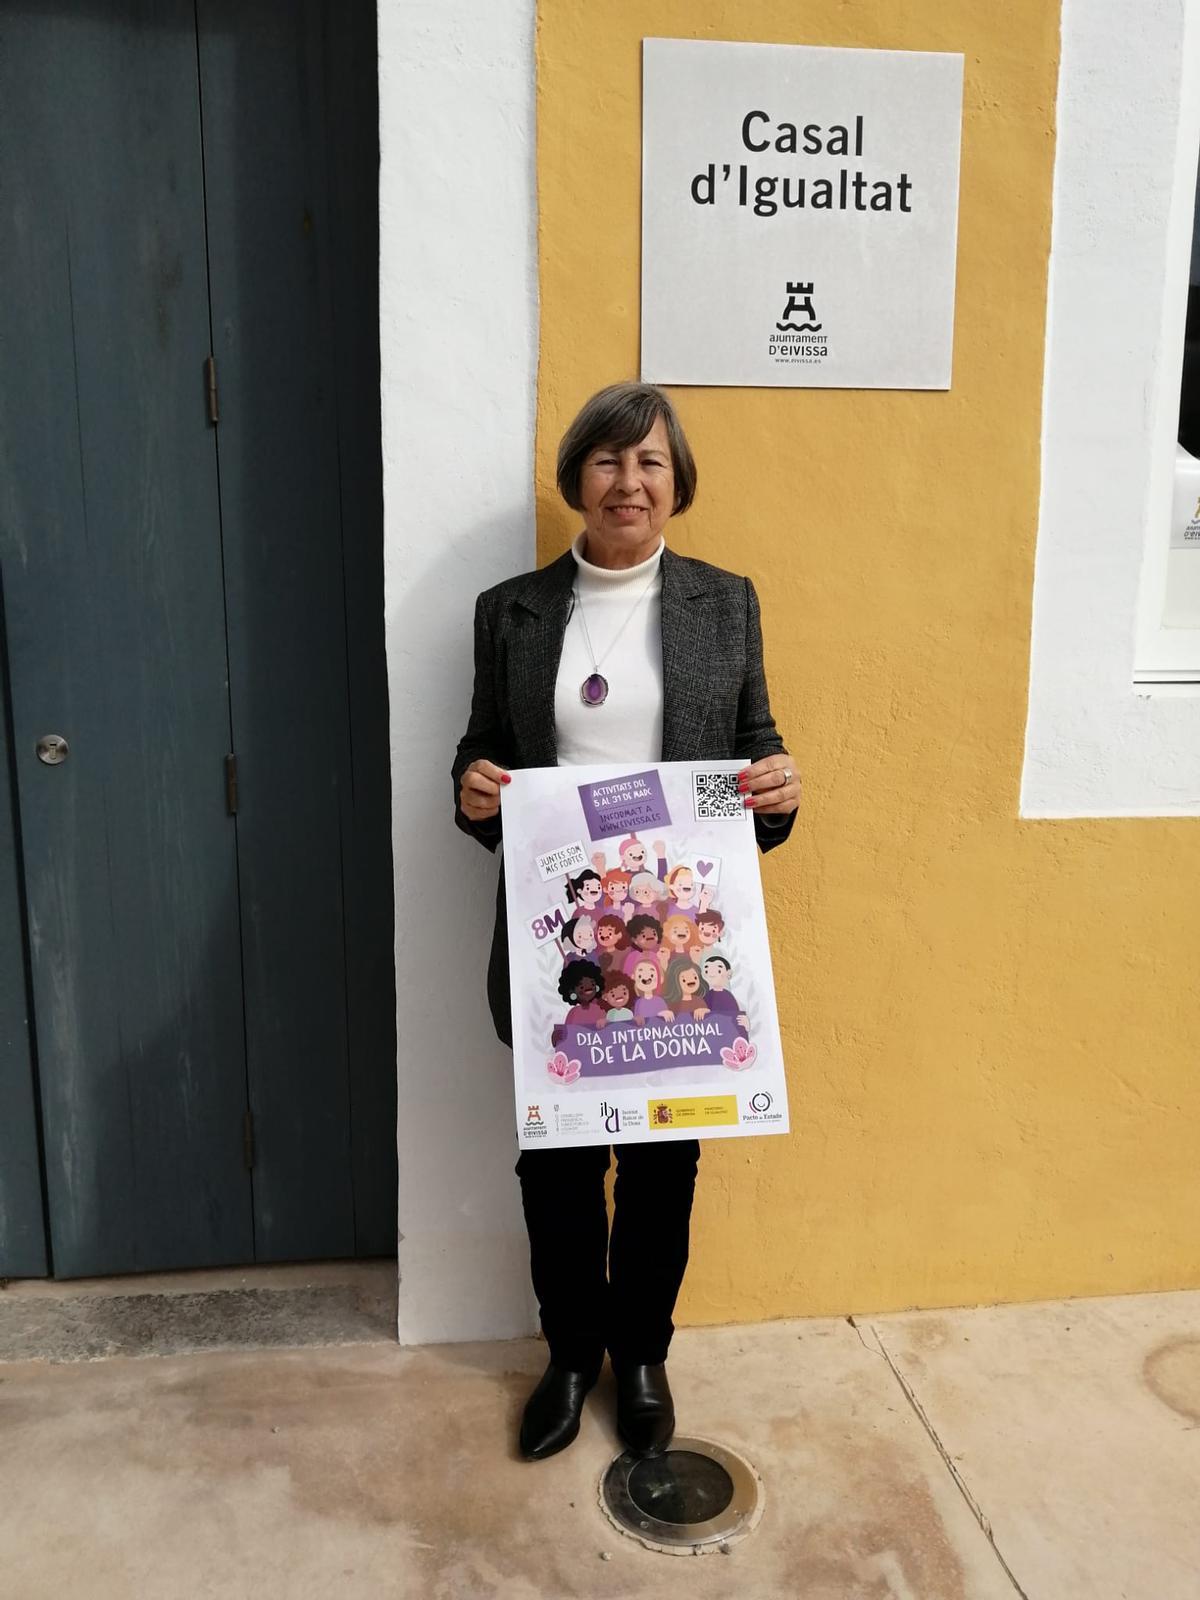 La concejala de Igualdad del Ayuntamiento de Ibiza, Montse García, sostiene el cartel de las actividades programadas por el 8M.